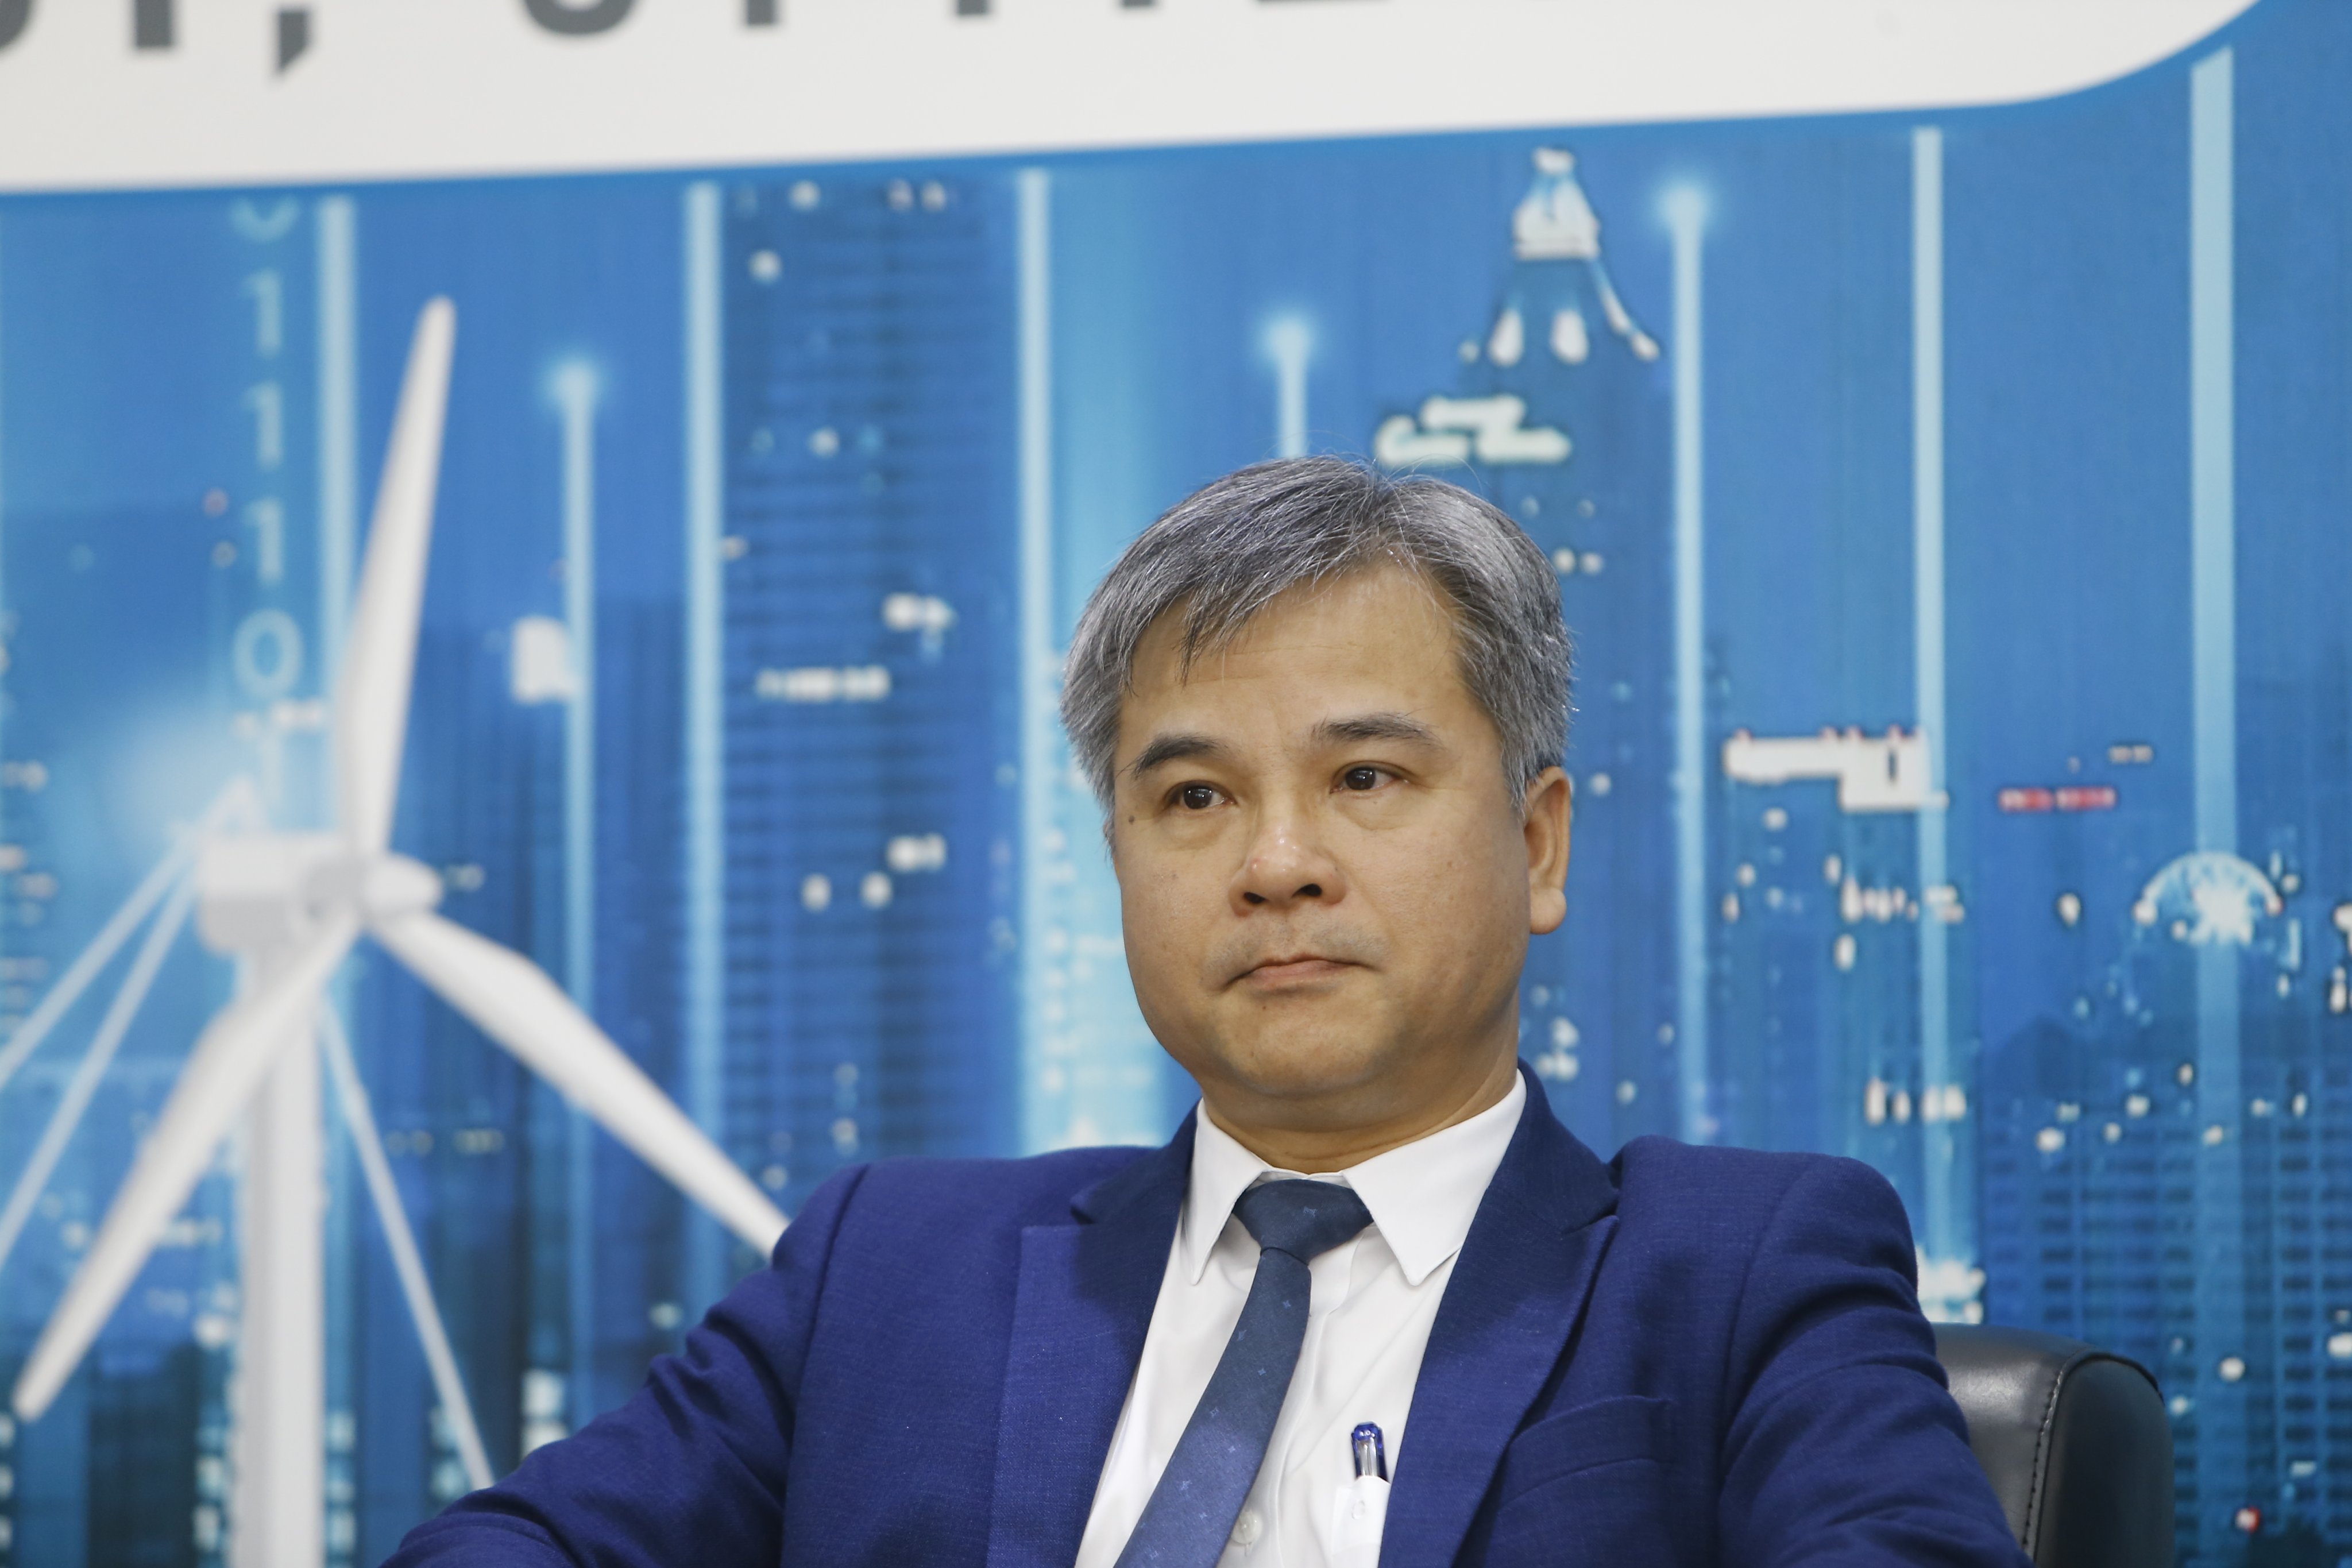 Ông Nguyễn Tuấn Anh, Phó cục trưởng Cục Điện lực và Năng lượng Tái tạo (Bộ Công thương): Việt Nam cần 141,59 tỷ USD vốn đầu tư vào ngành điện giai đoạn 2021-2030.